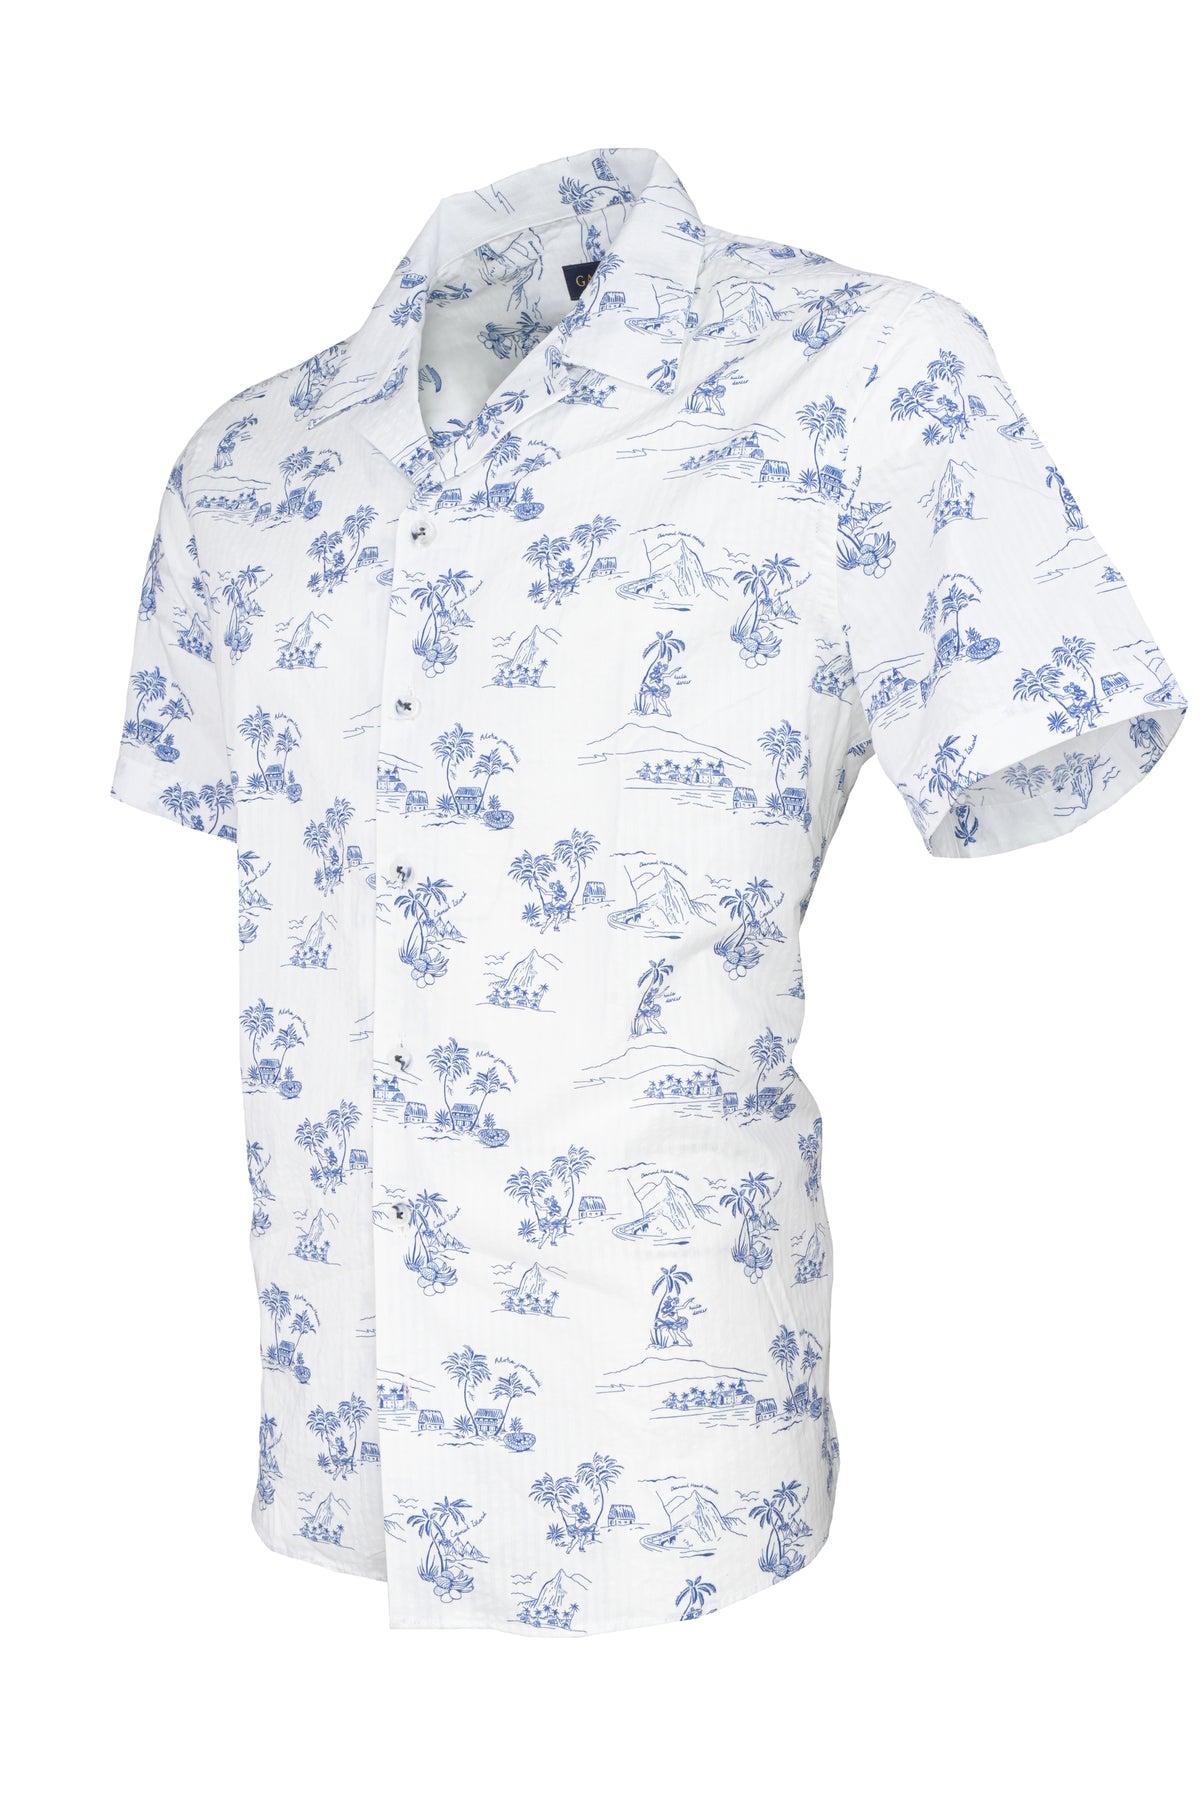 Garnet Tropical Island Seersucker Camp Collar Shirt